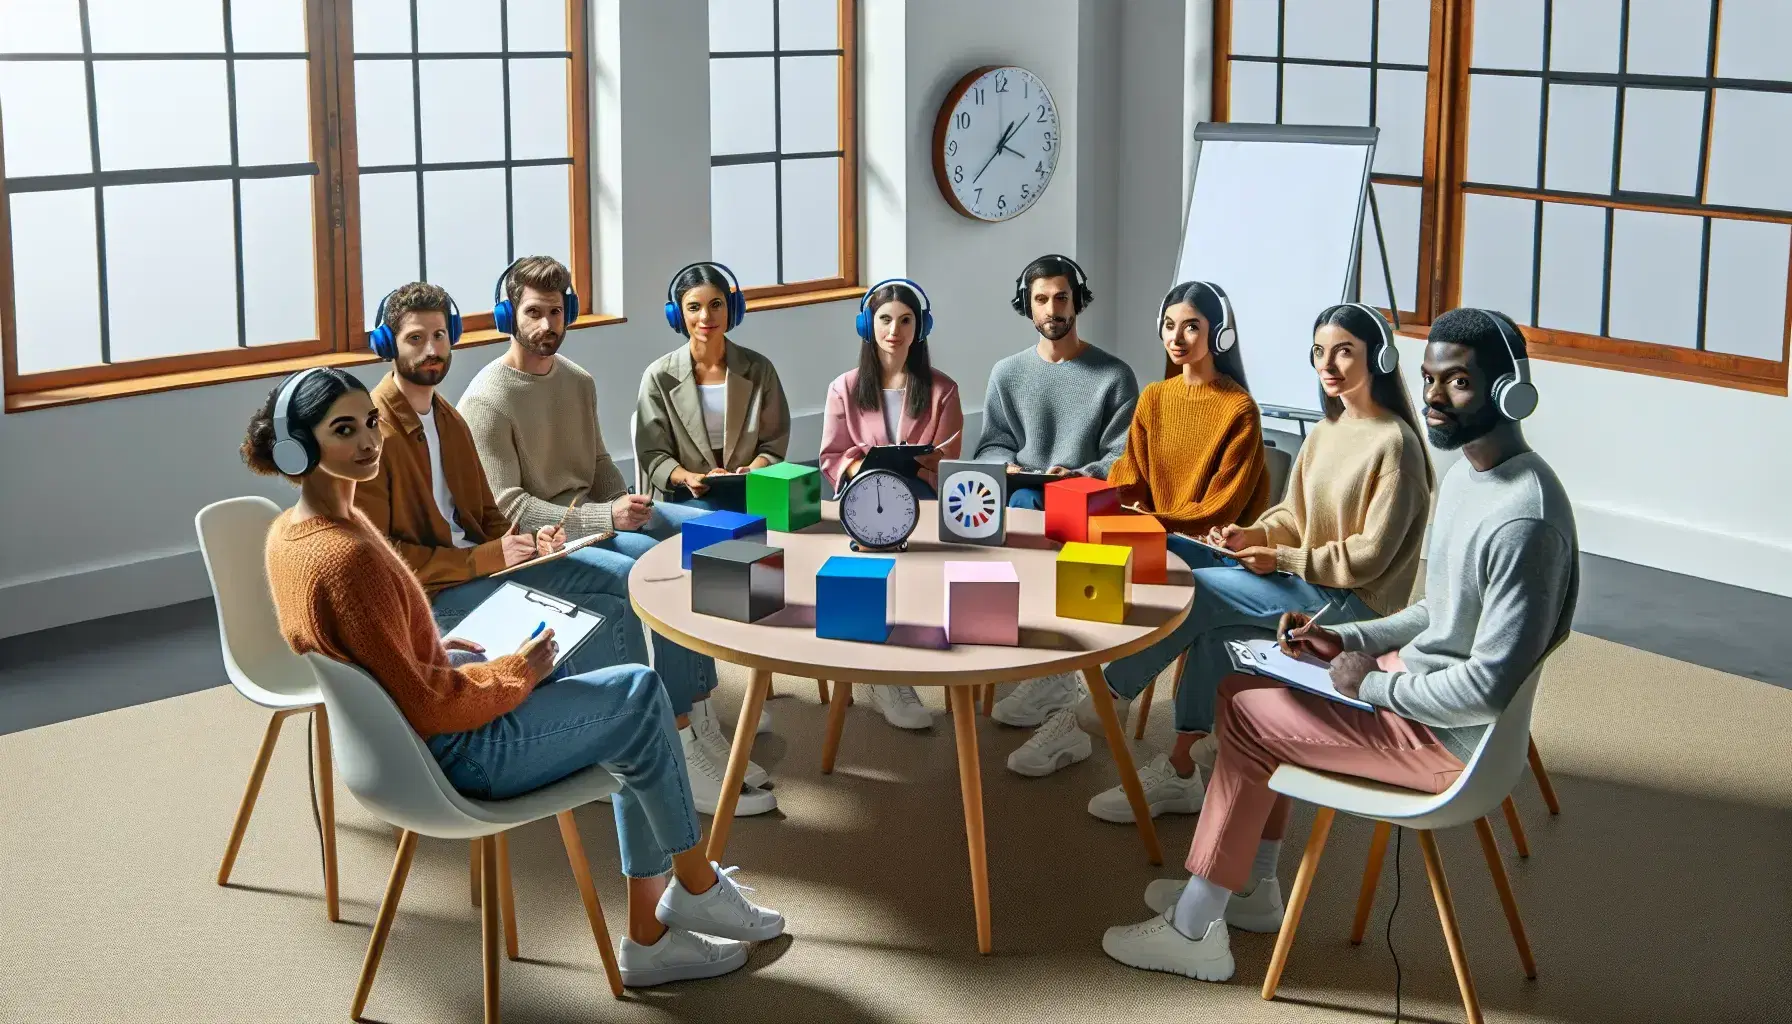 Grupo diverso en sesión de investigación psicológica con herramientas como cubos de colores y tarjetas en una sala iluminada.